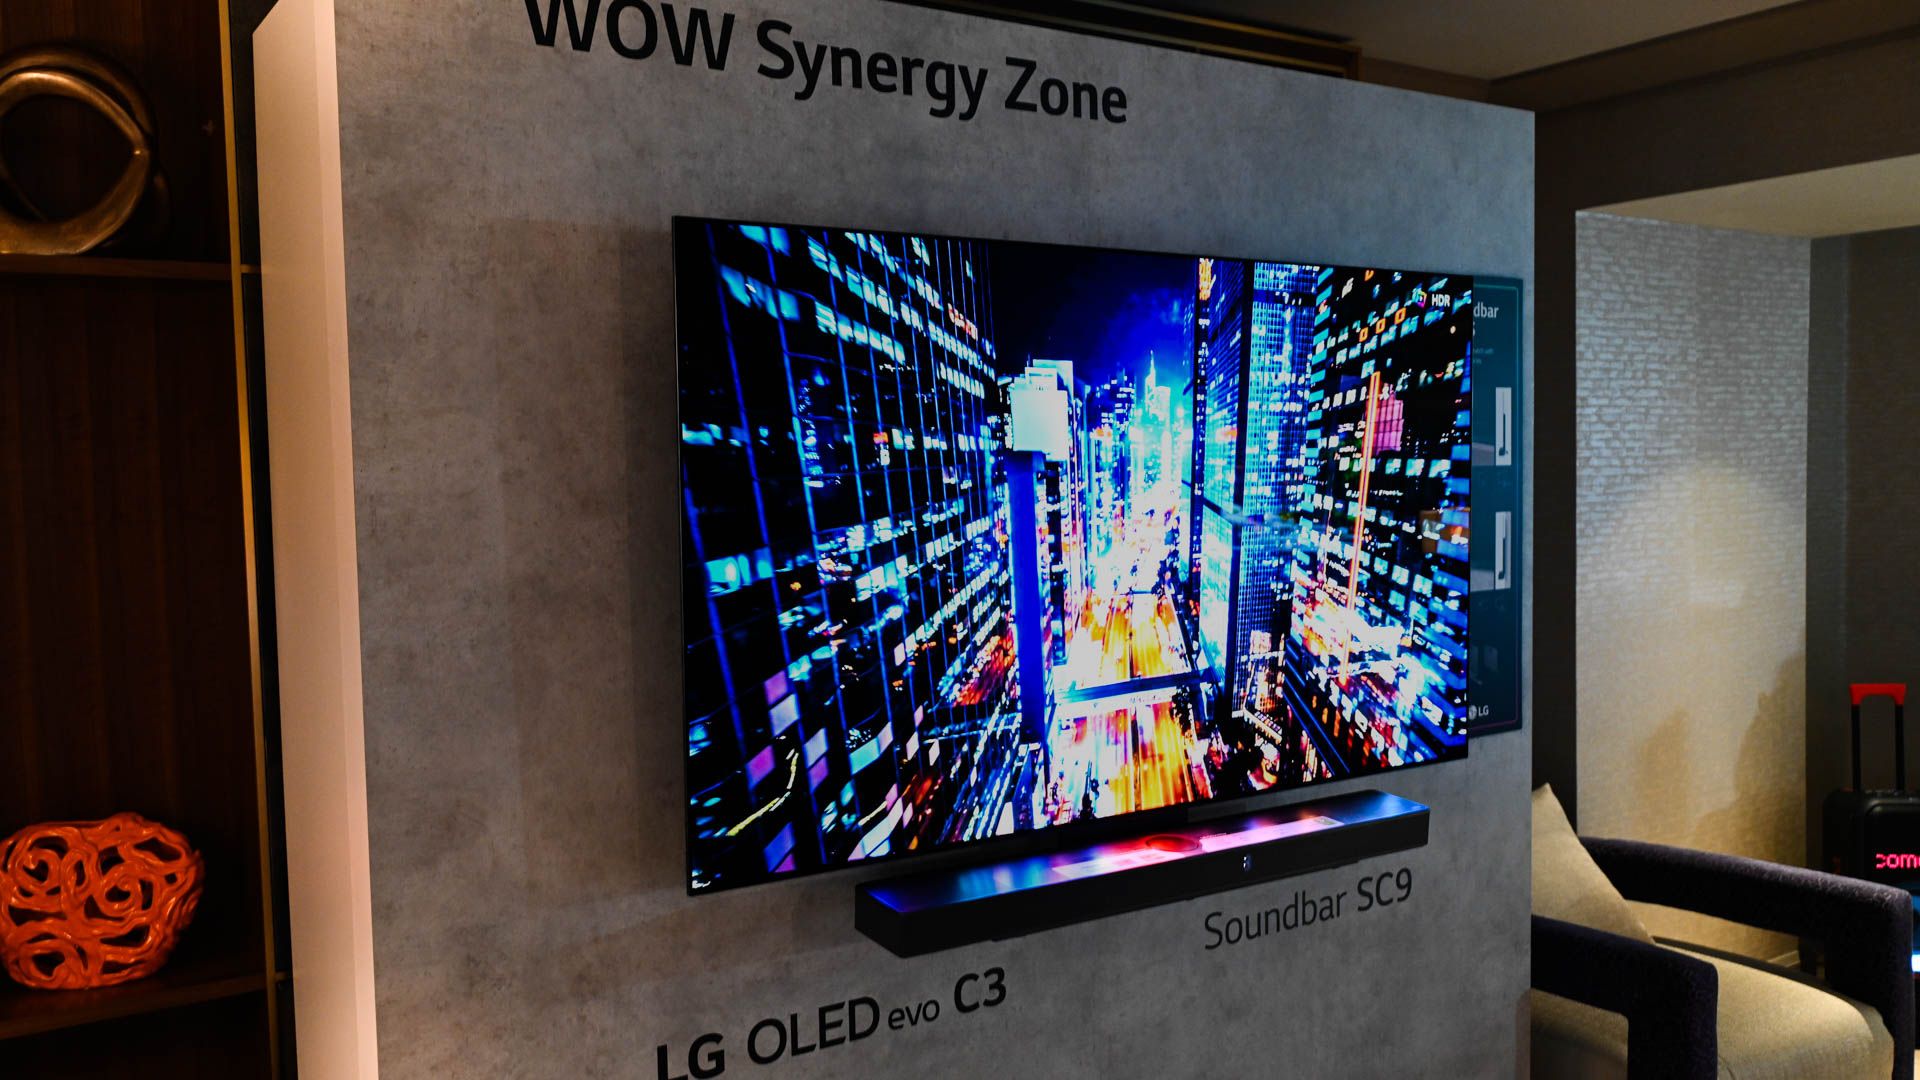 WOW Synergy Zone demonstrada com um LG OLED evo c3 conectado Soundbar SC9